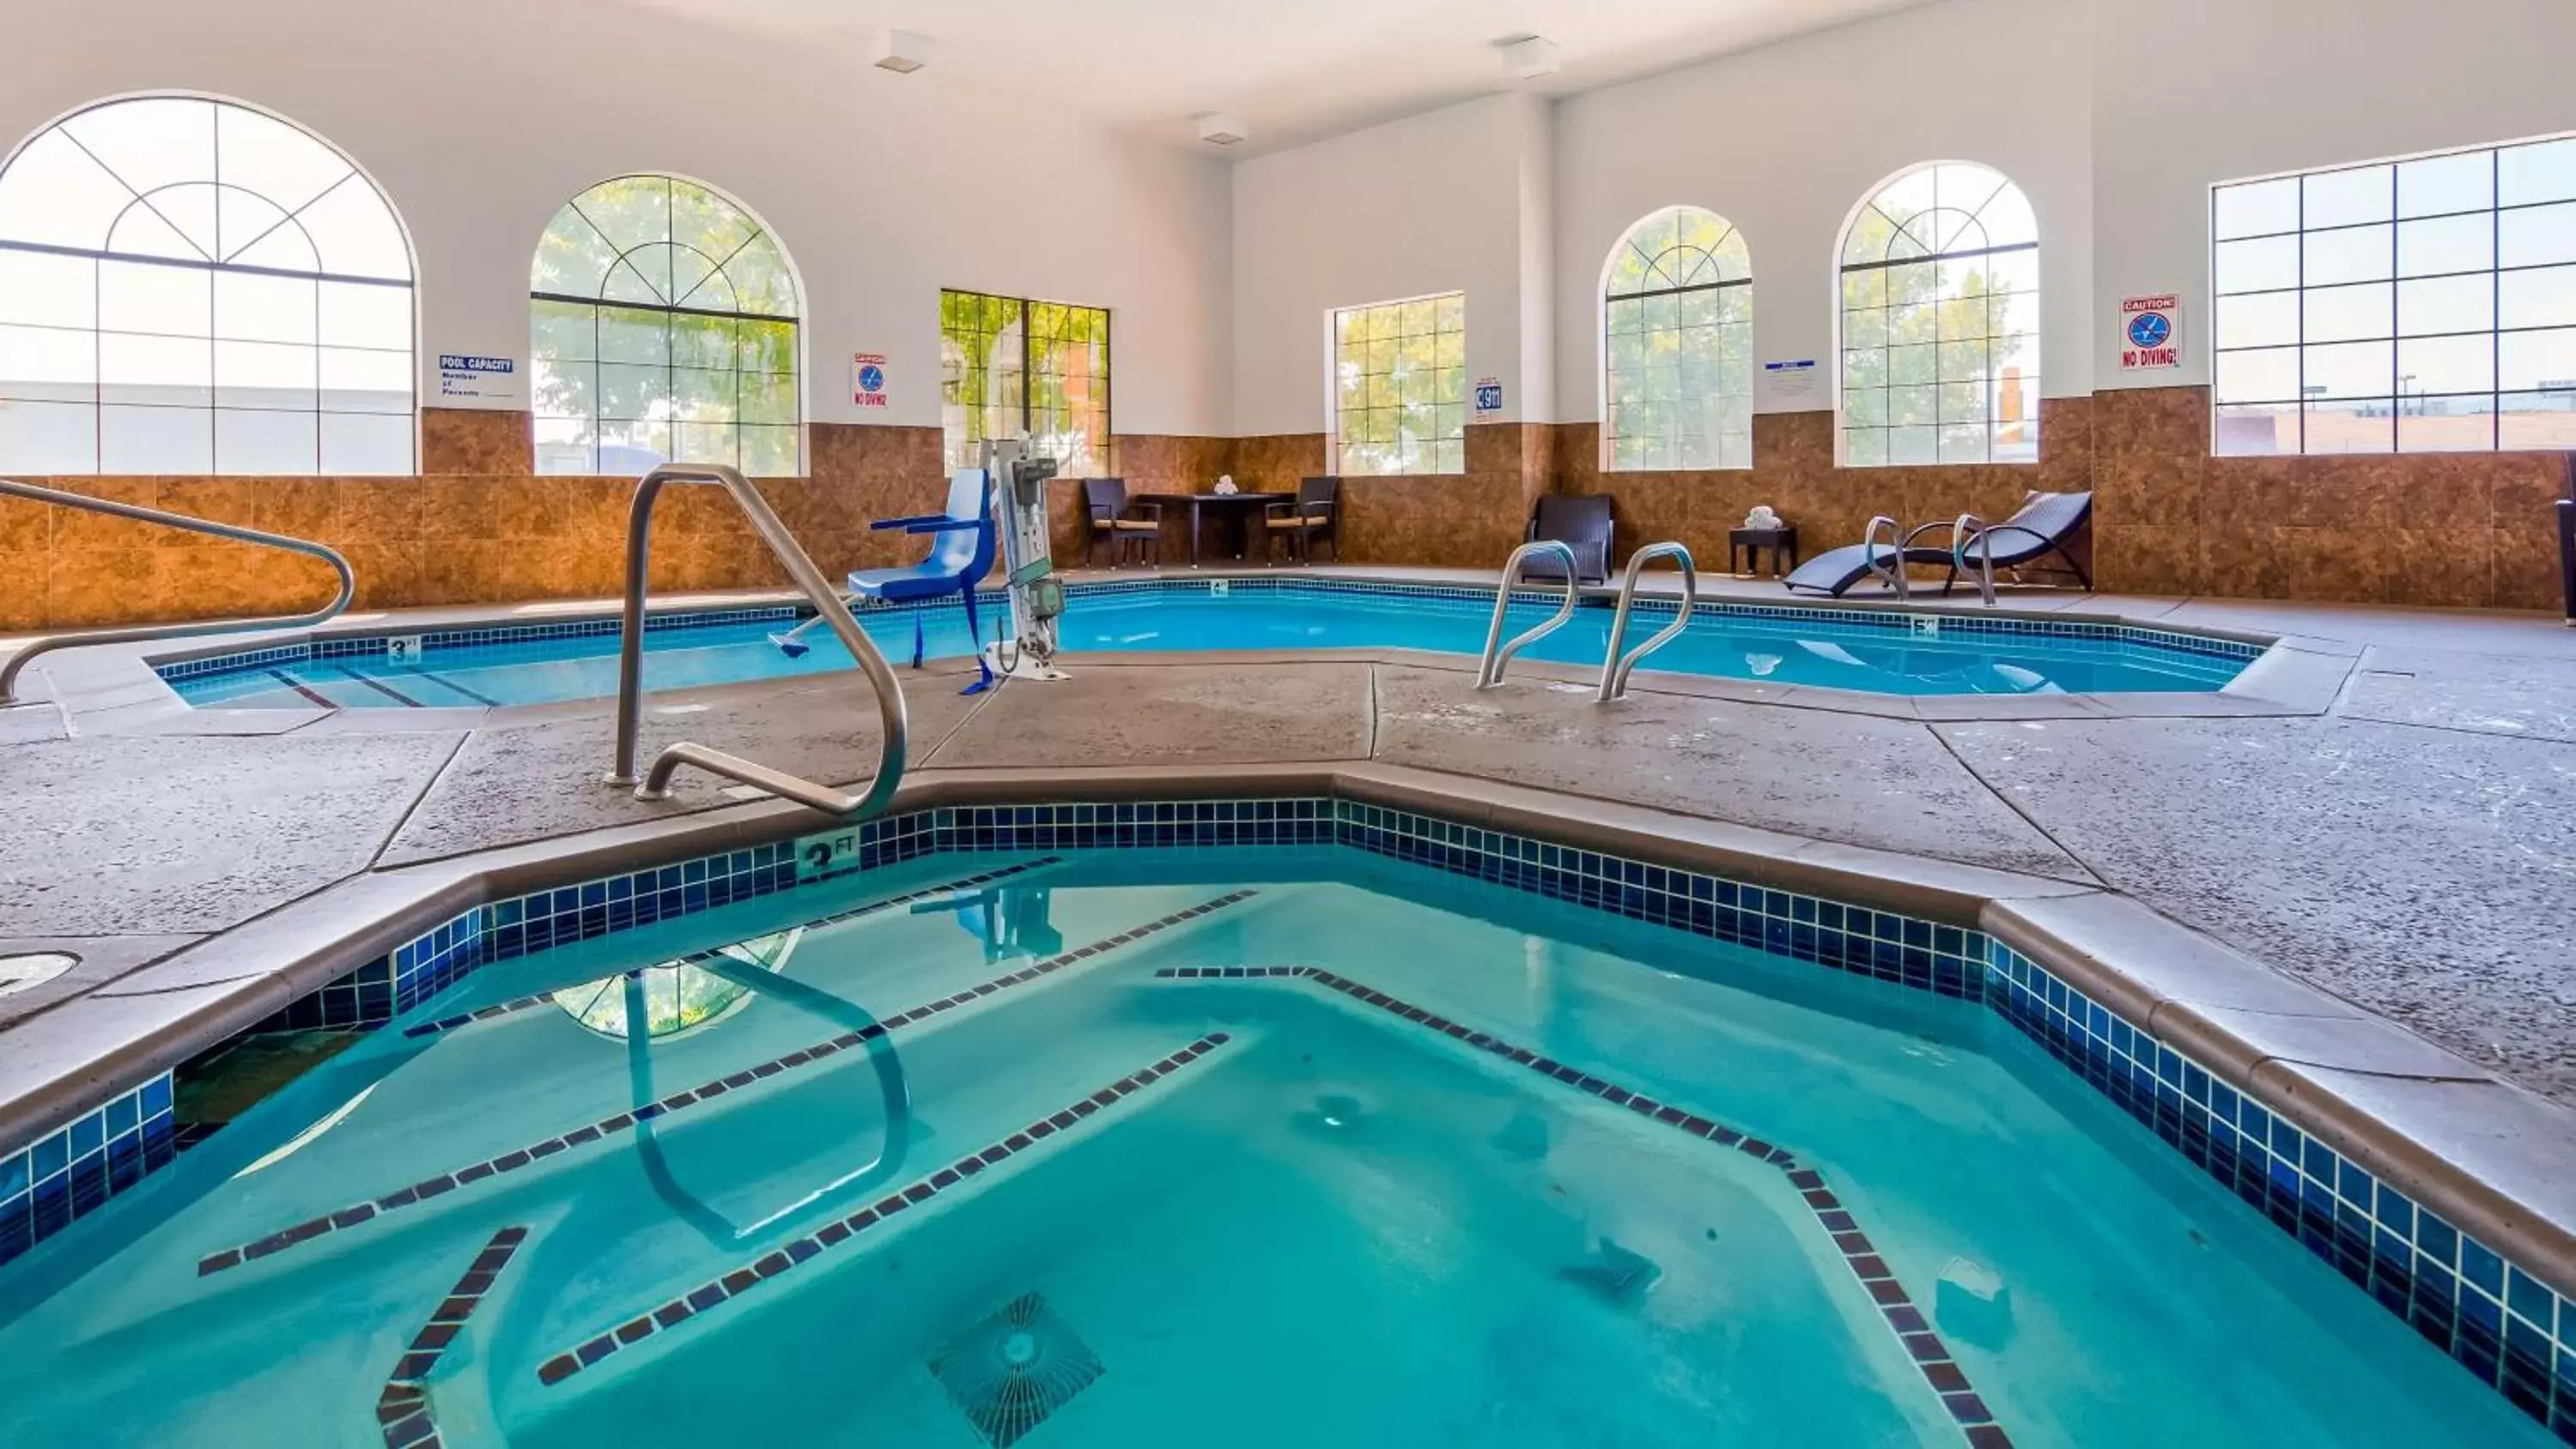 On site, Swimming Pool in Best Western Plus - Wendover Inn